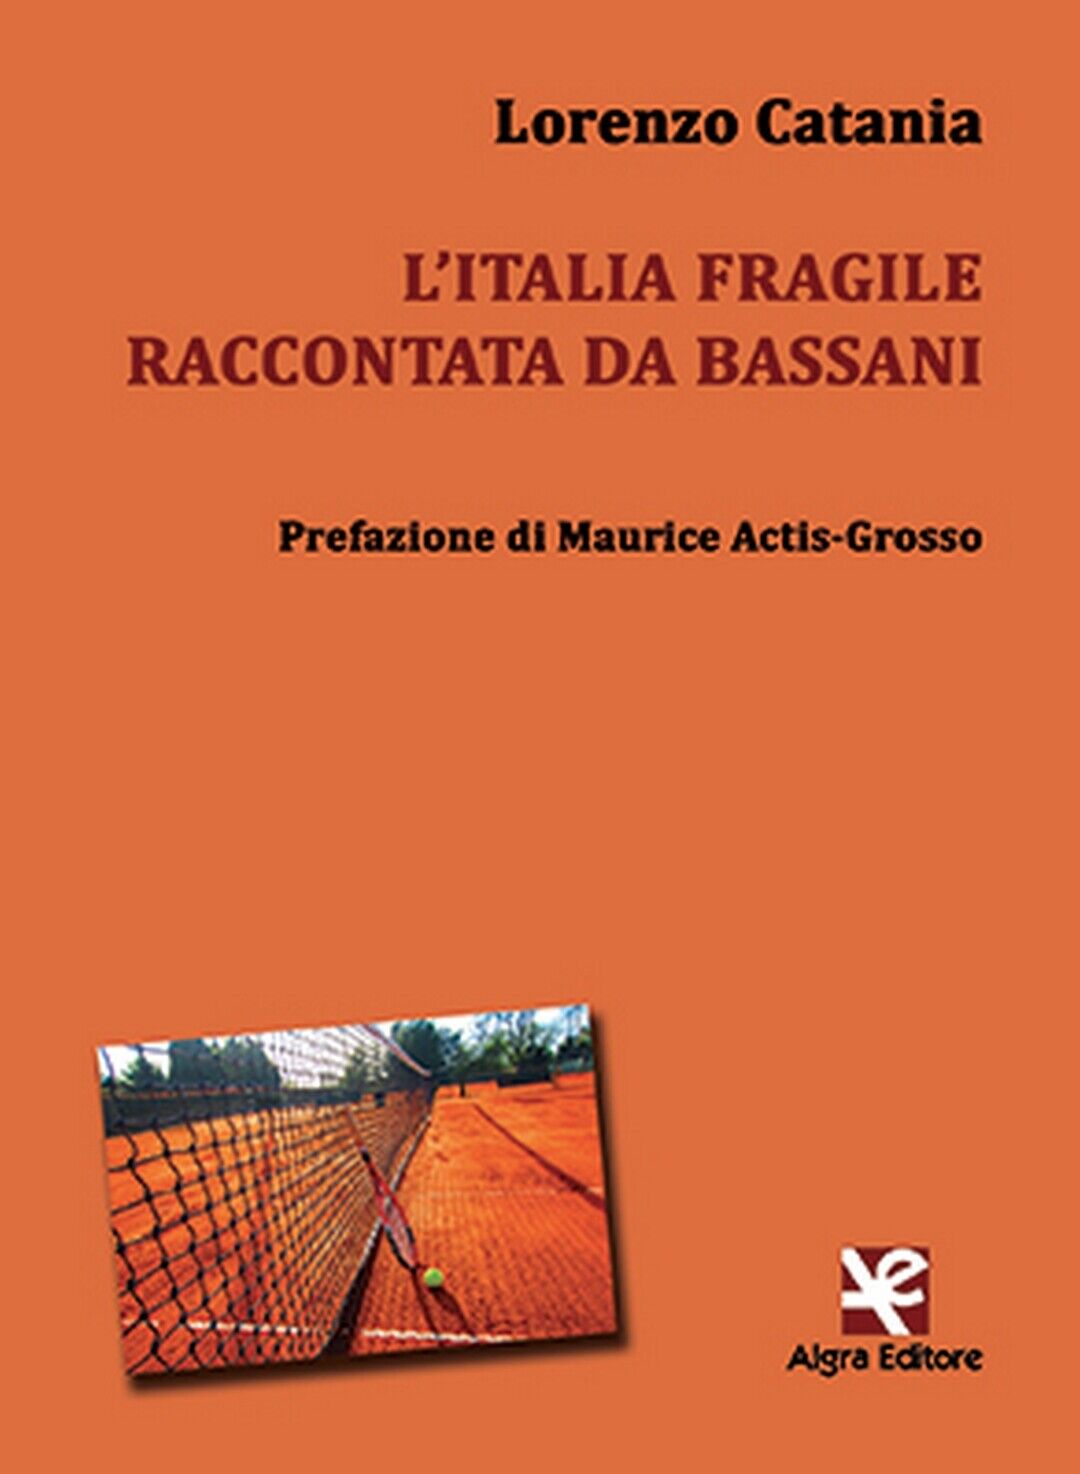 L'Italia fragile raccontata da Bassani  di Lorenzo Catania,  Algra Editore